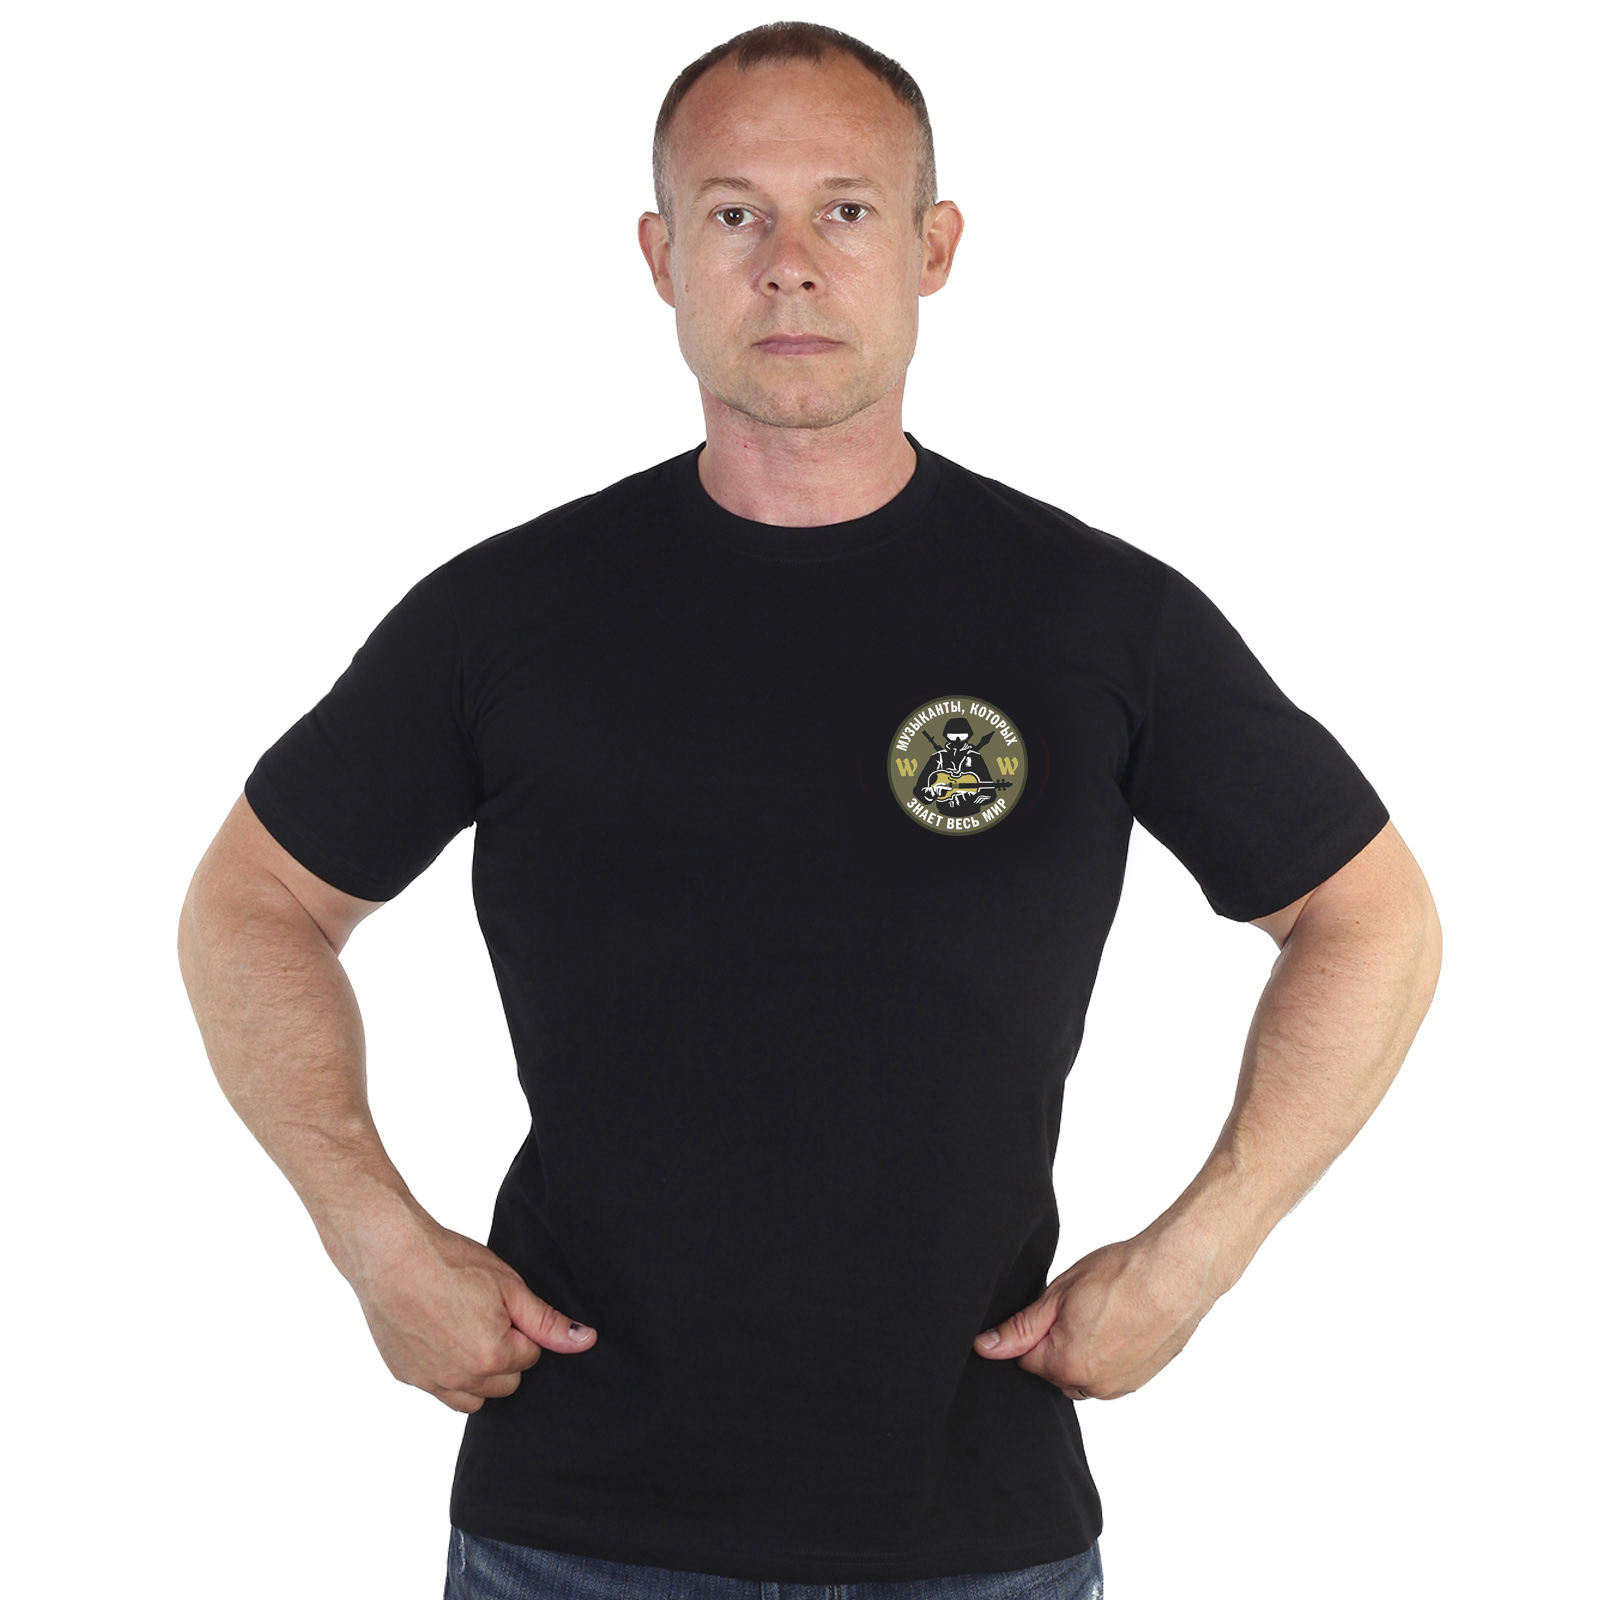 Чёрная футболка с термоаппликацией "Группа Вагнера"